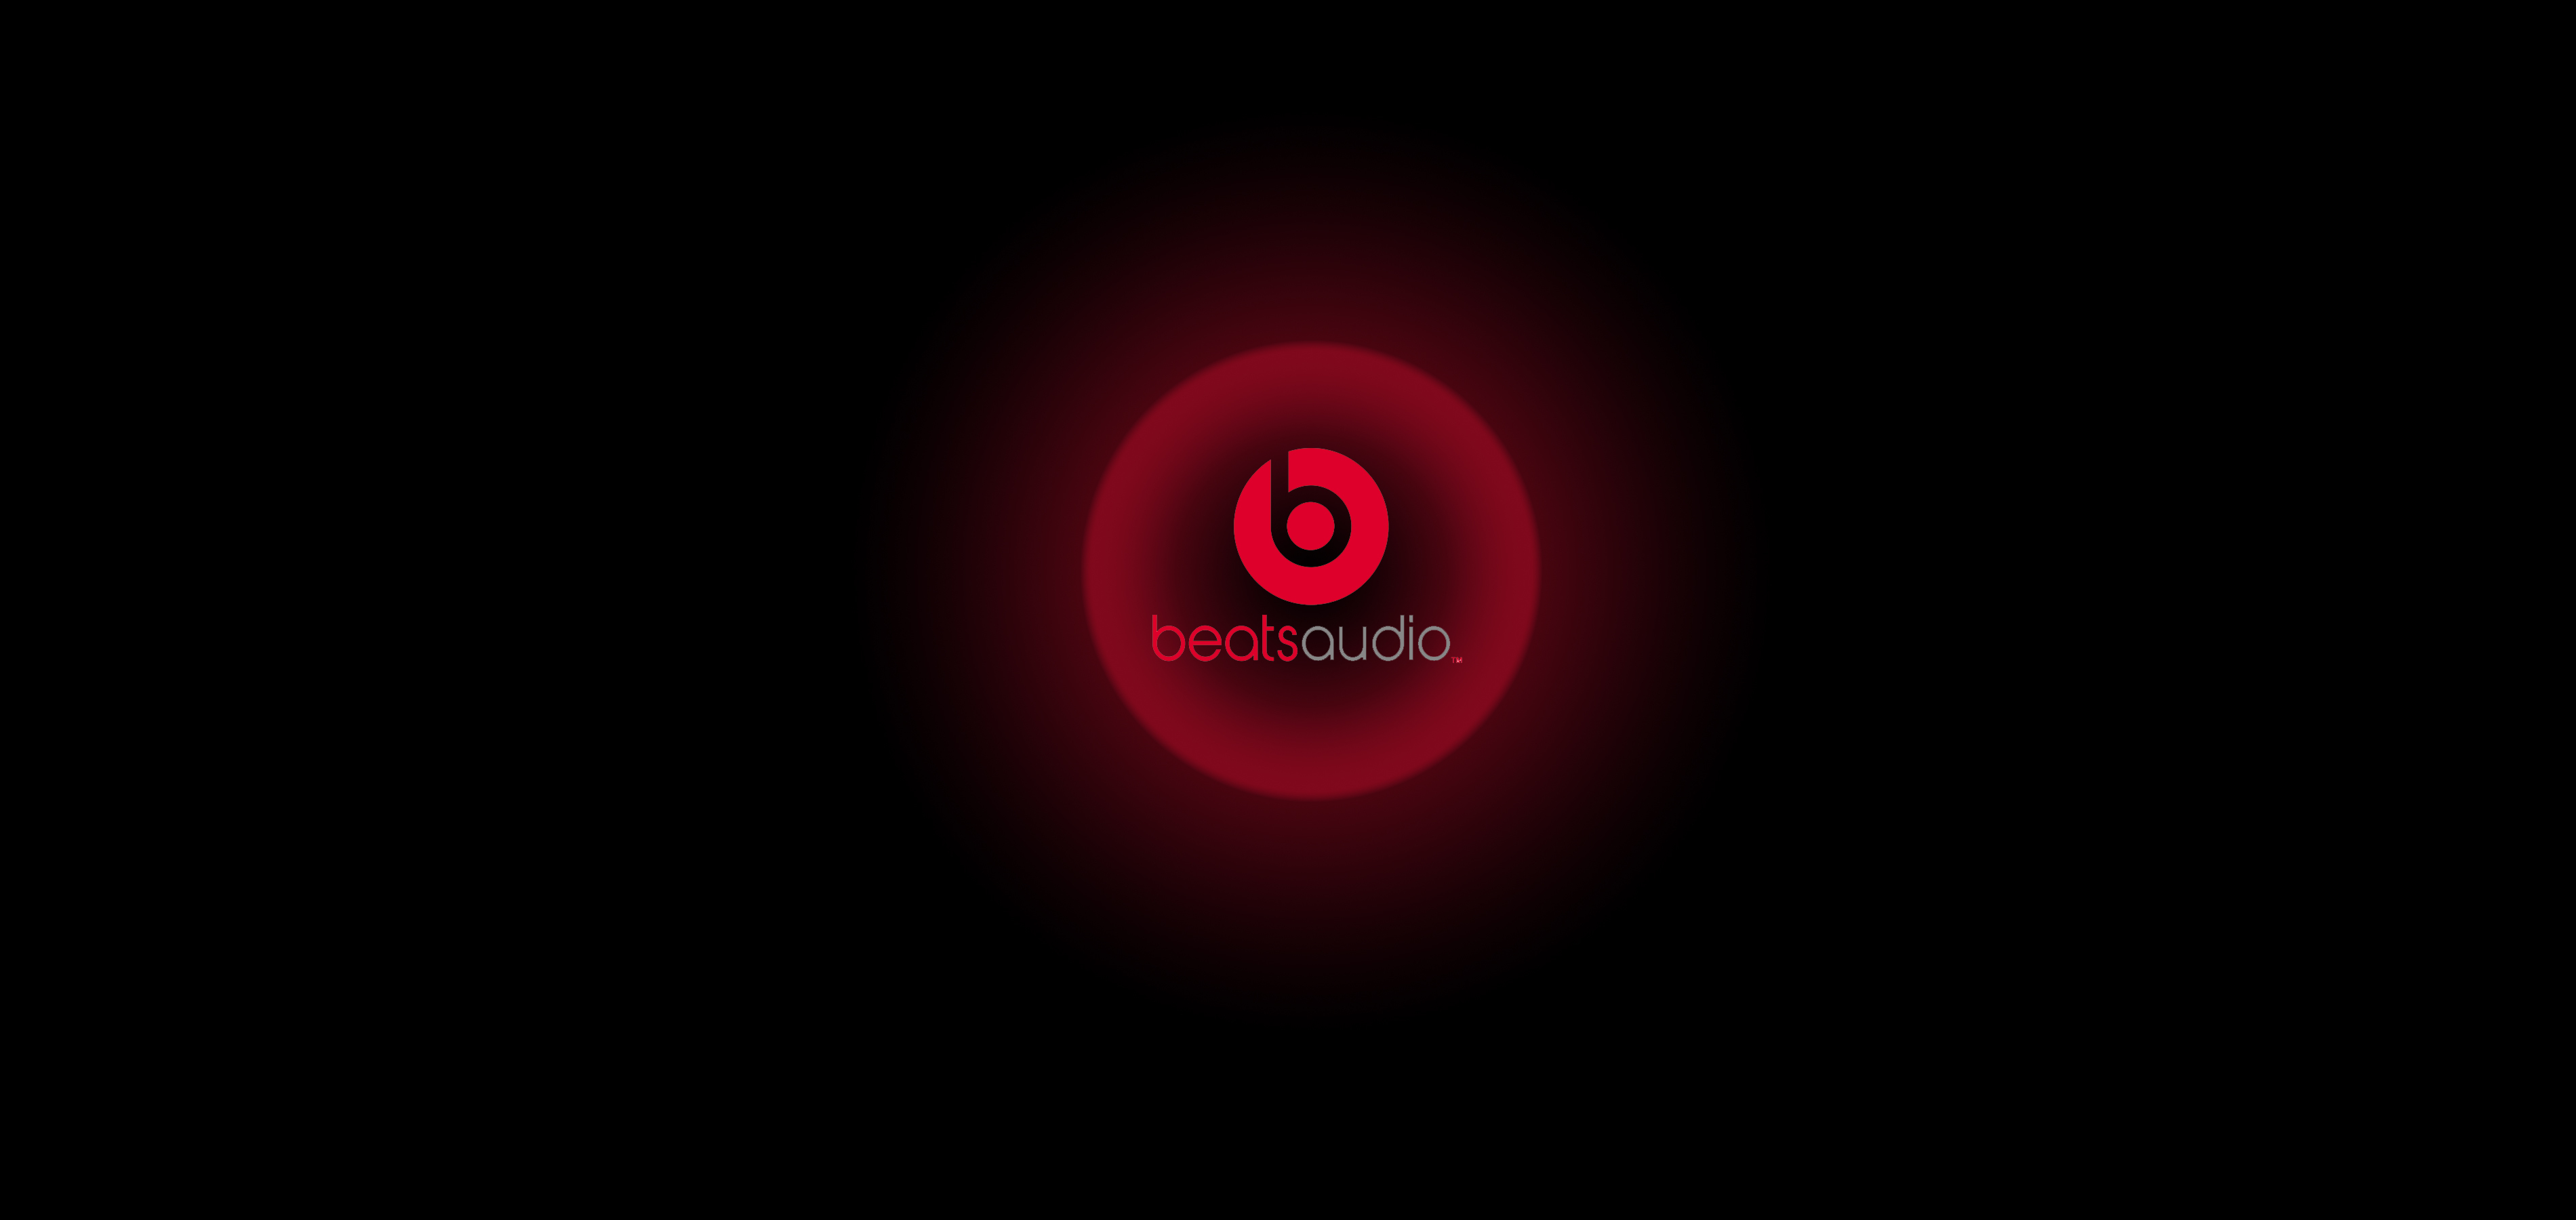 Wallpaper Of Beatsaudio, Htc, Dr Dre Background & Hd - Beats Audio By Dre - HD Wallpaper 